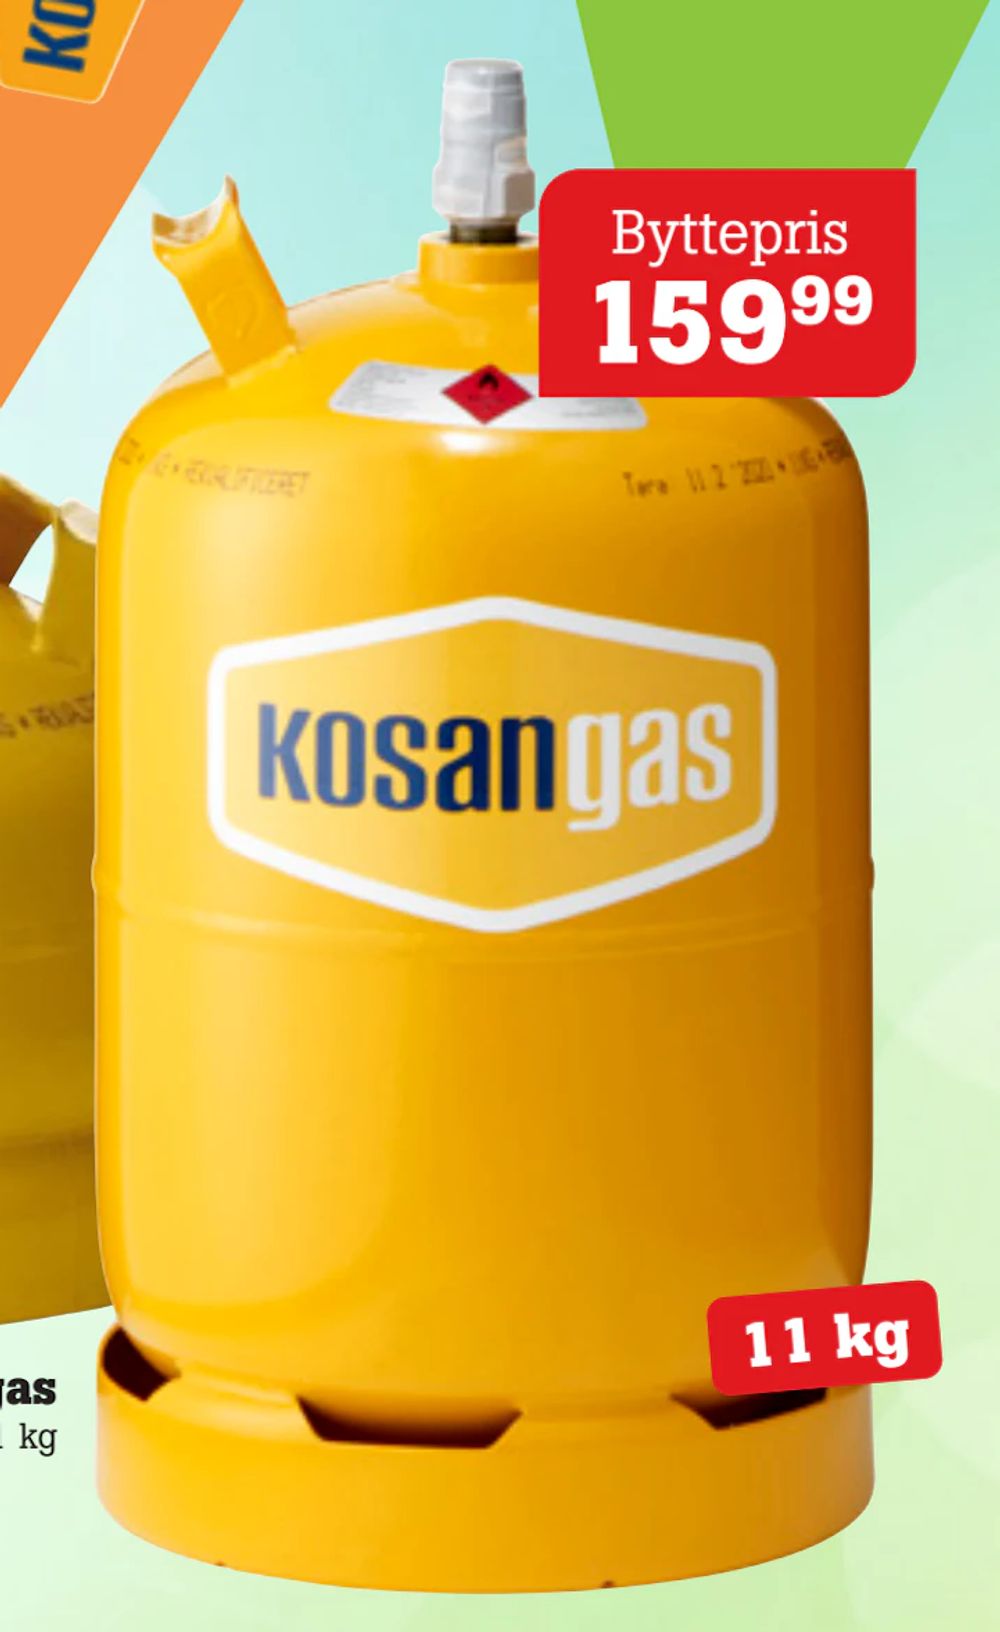 Tilbud på Kosan flaskegas fra Poetzsch Padborg til 159,99 kr.